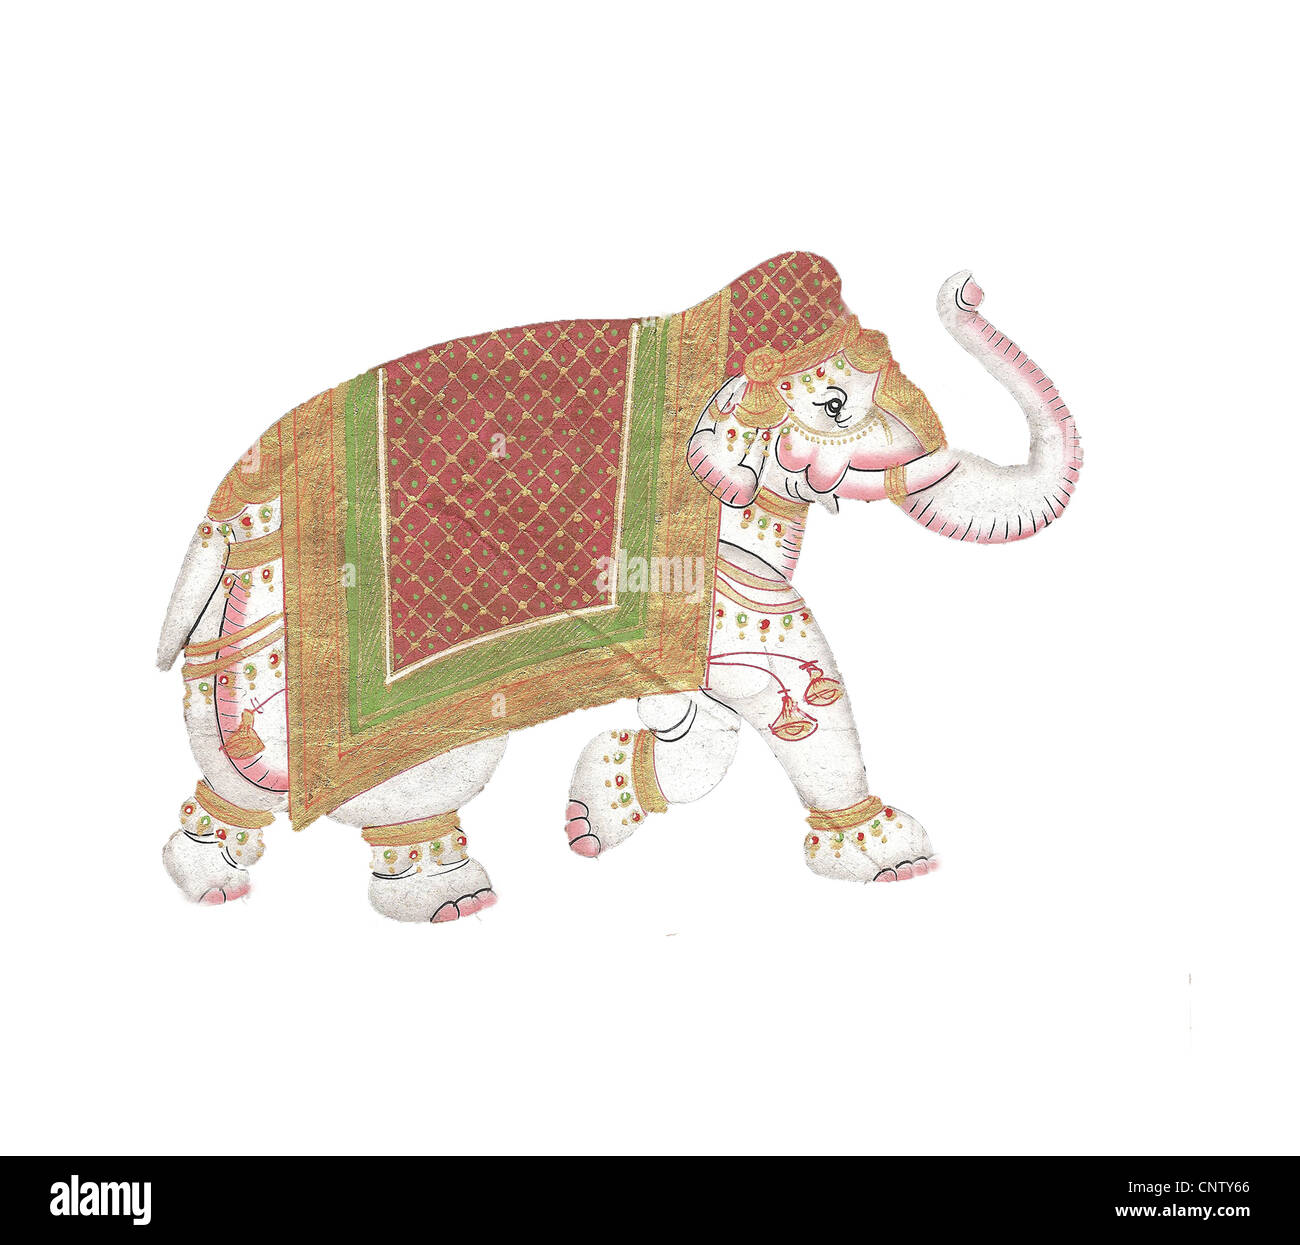 Sur l'éléphant Caparisoned parade.miniature indienne la peinture sur papier du 19e siècle. Udaipur, Inde Banque D'Images